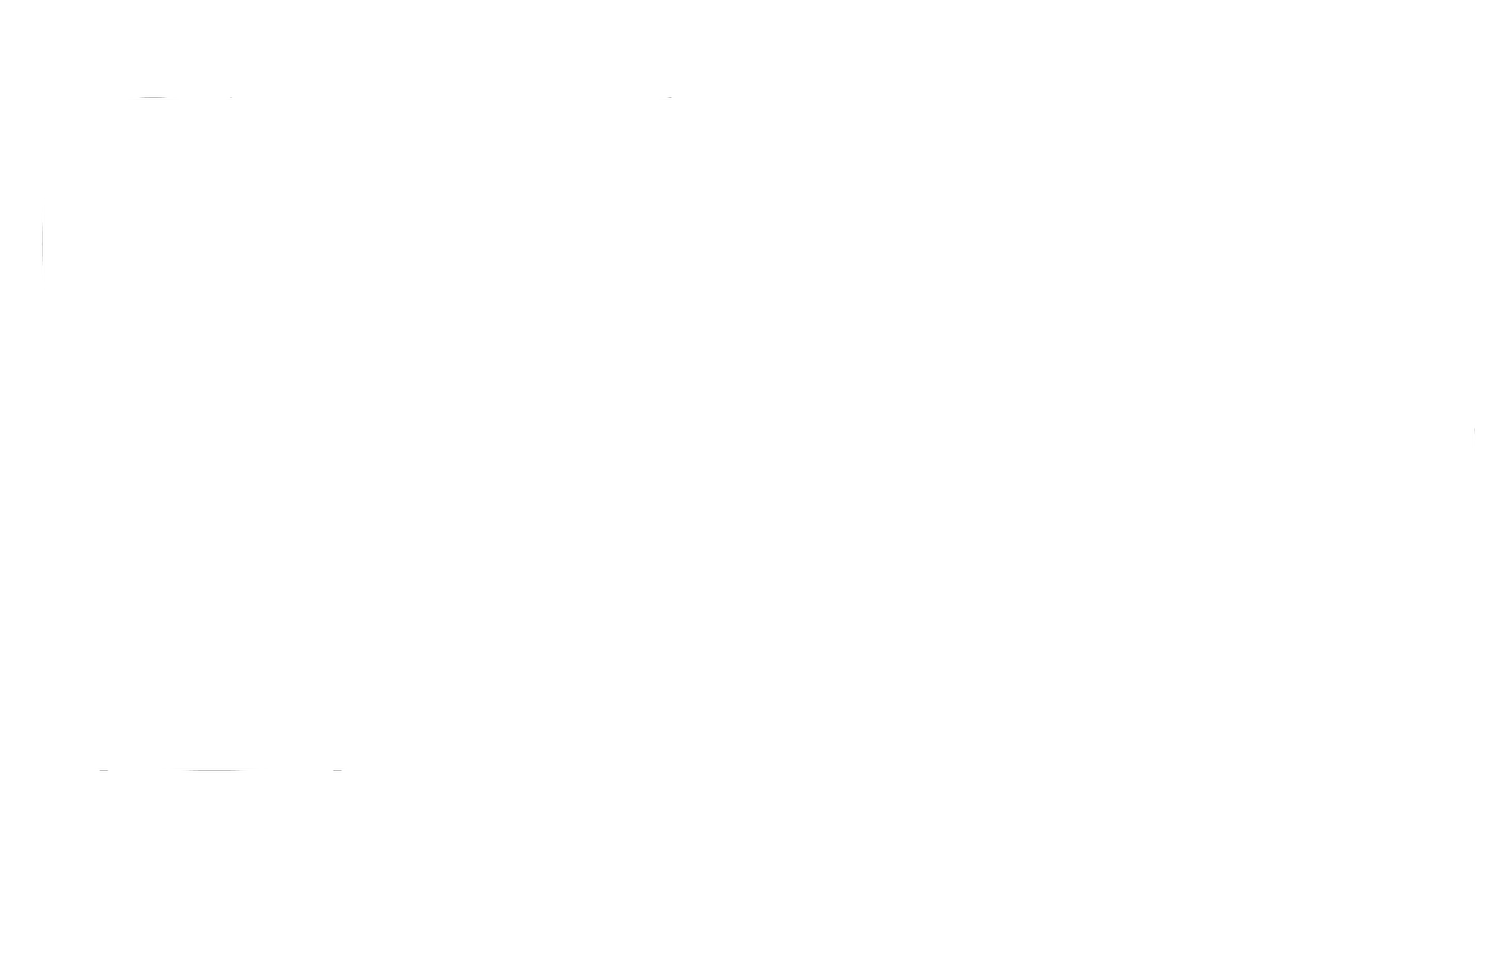 Gather (g)Round